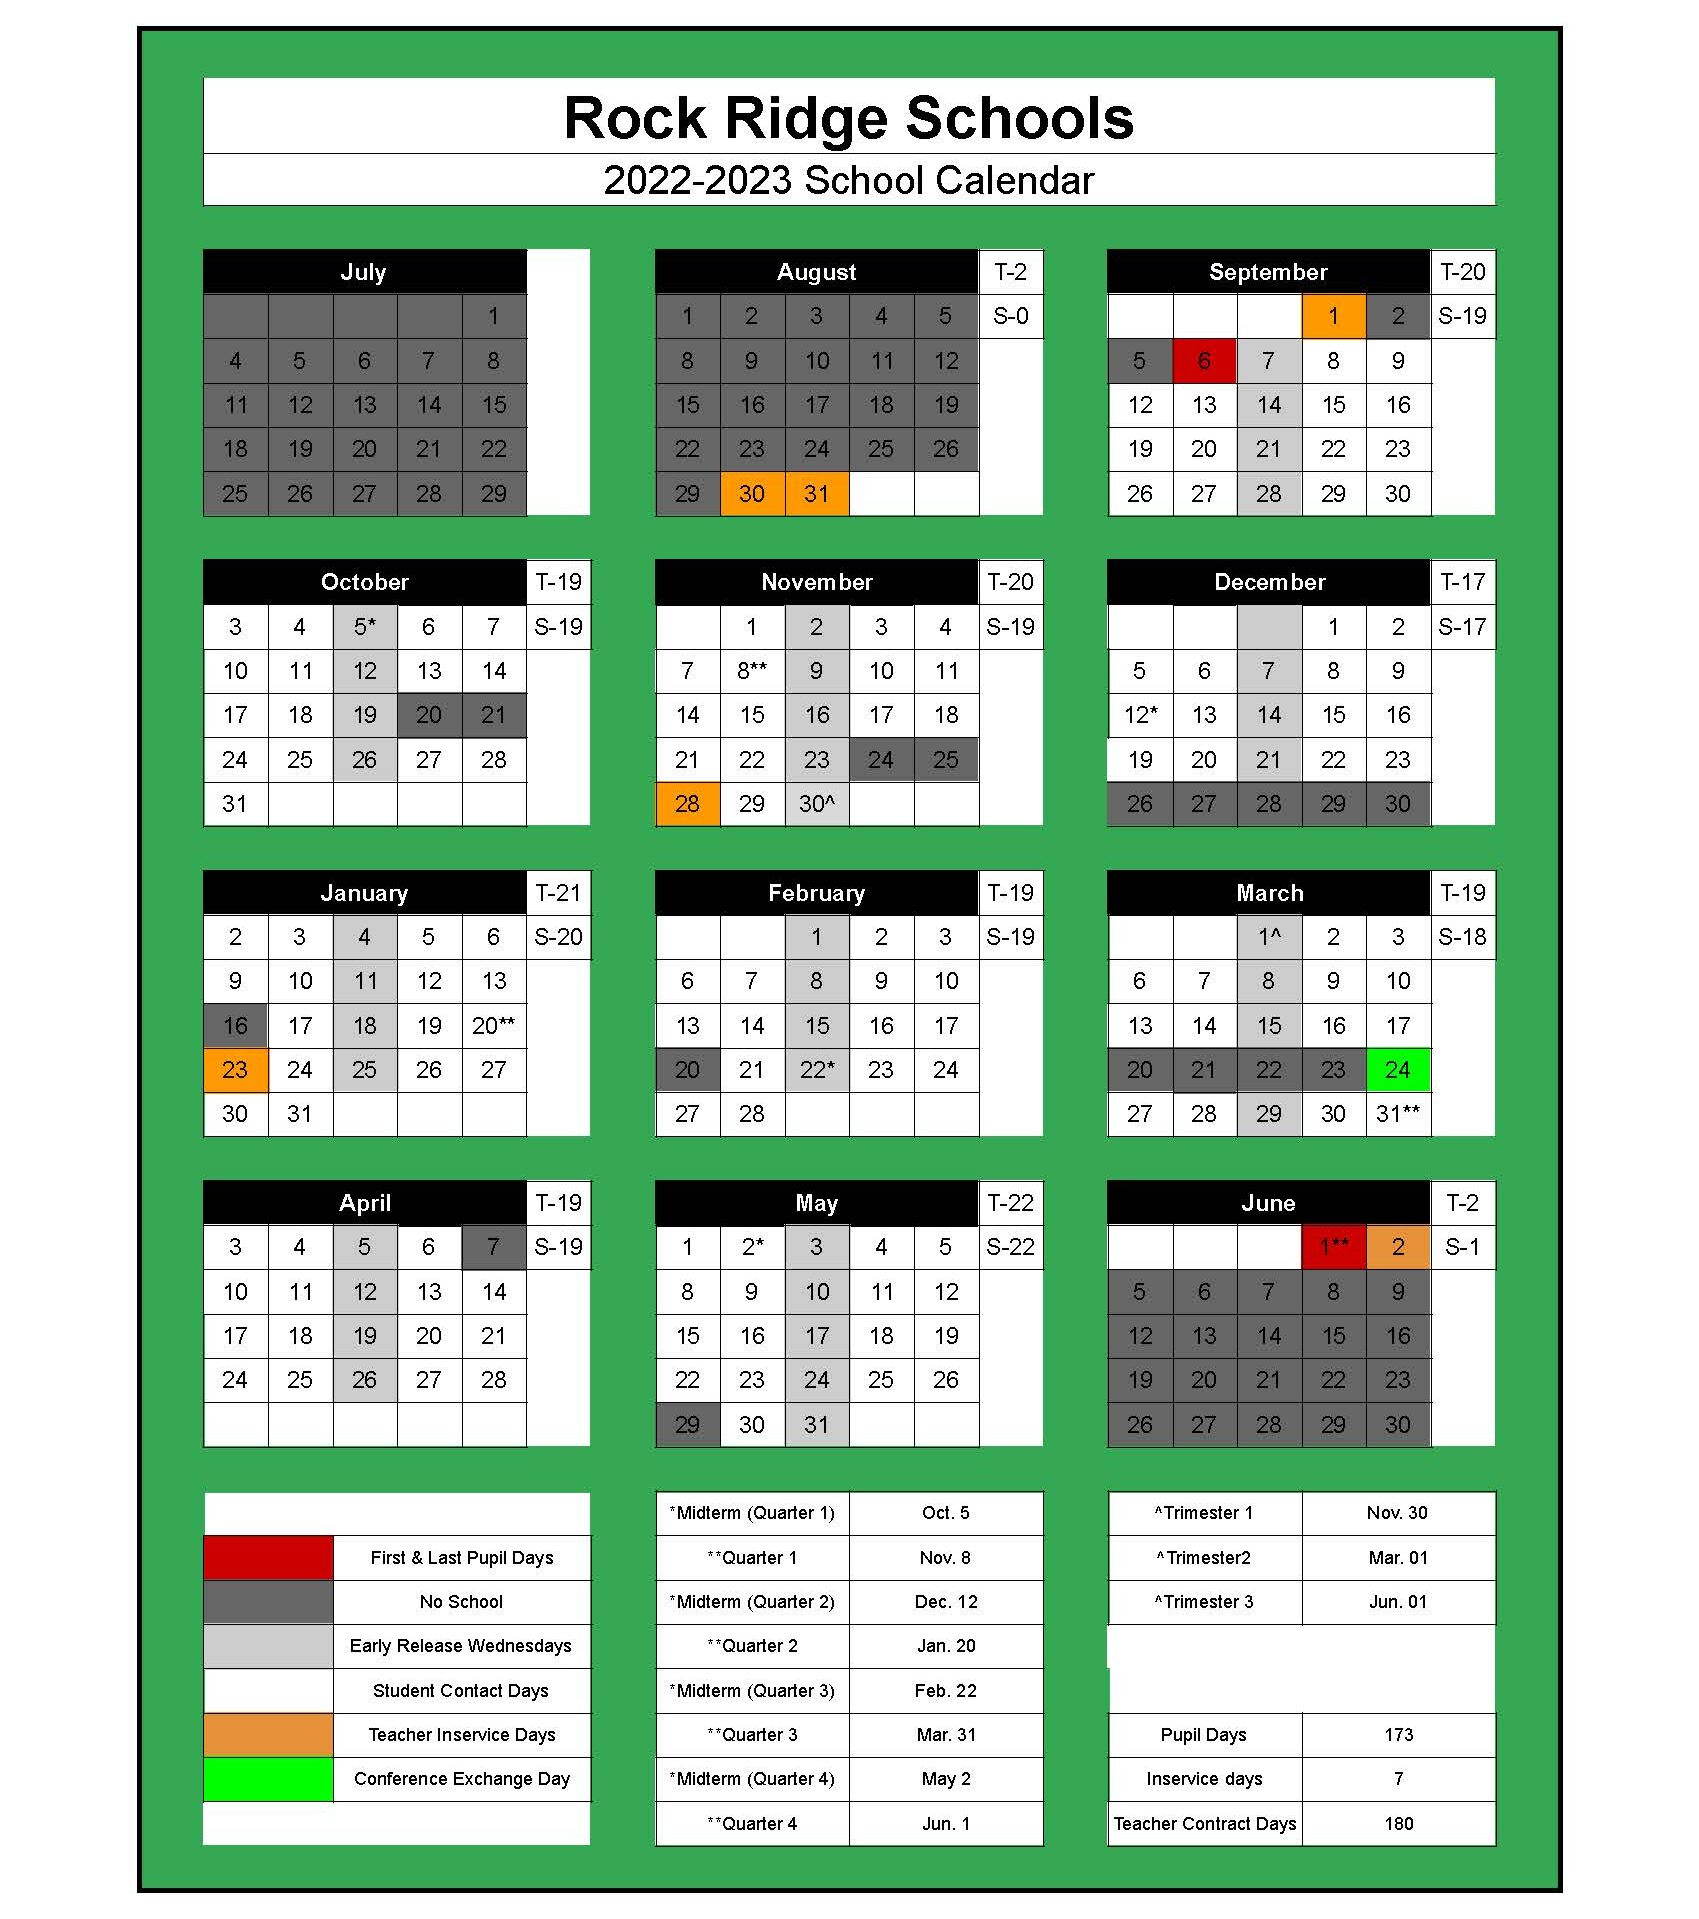 Rock Ridge Public Schools Calendar 2022 and 2023 - PublicHolidays.com